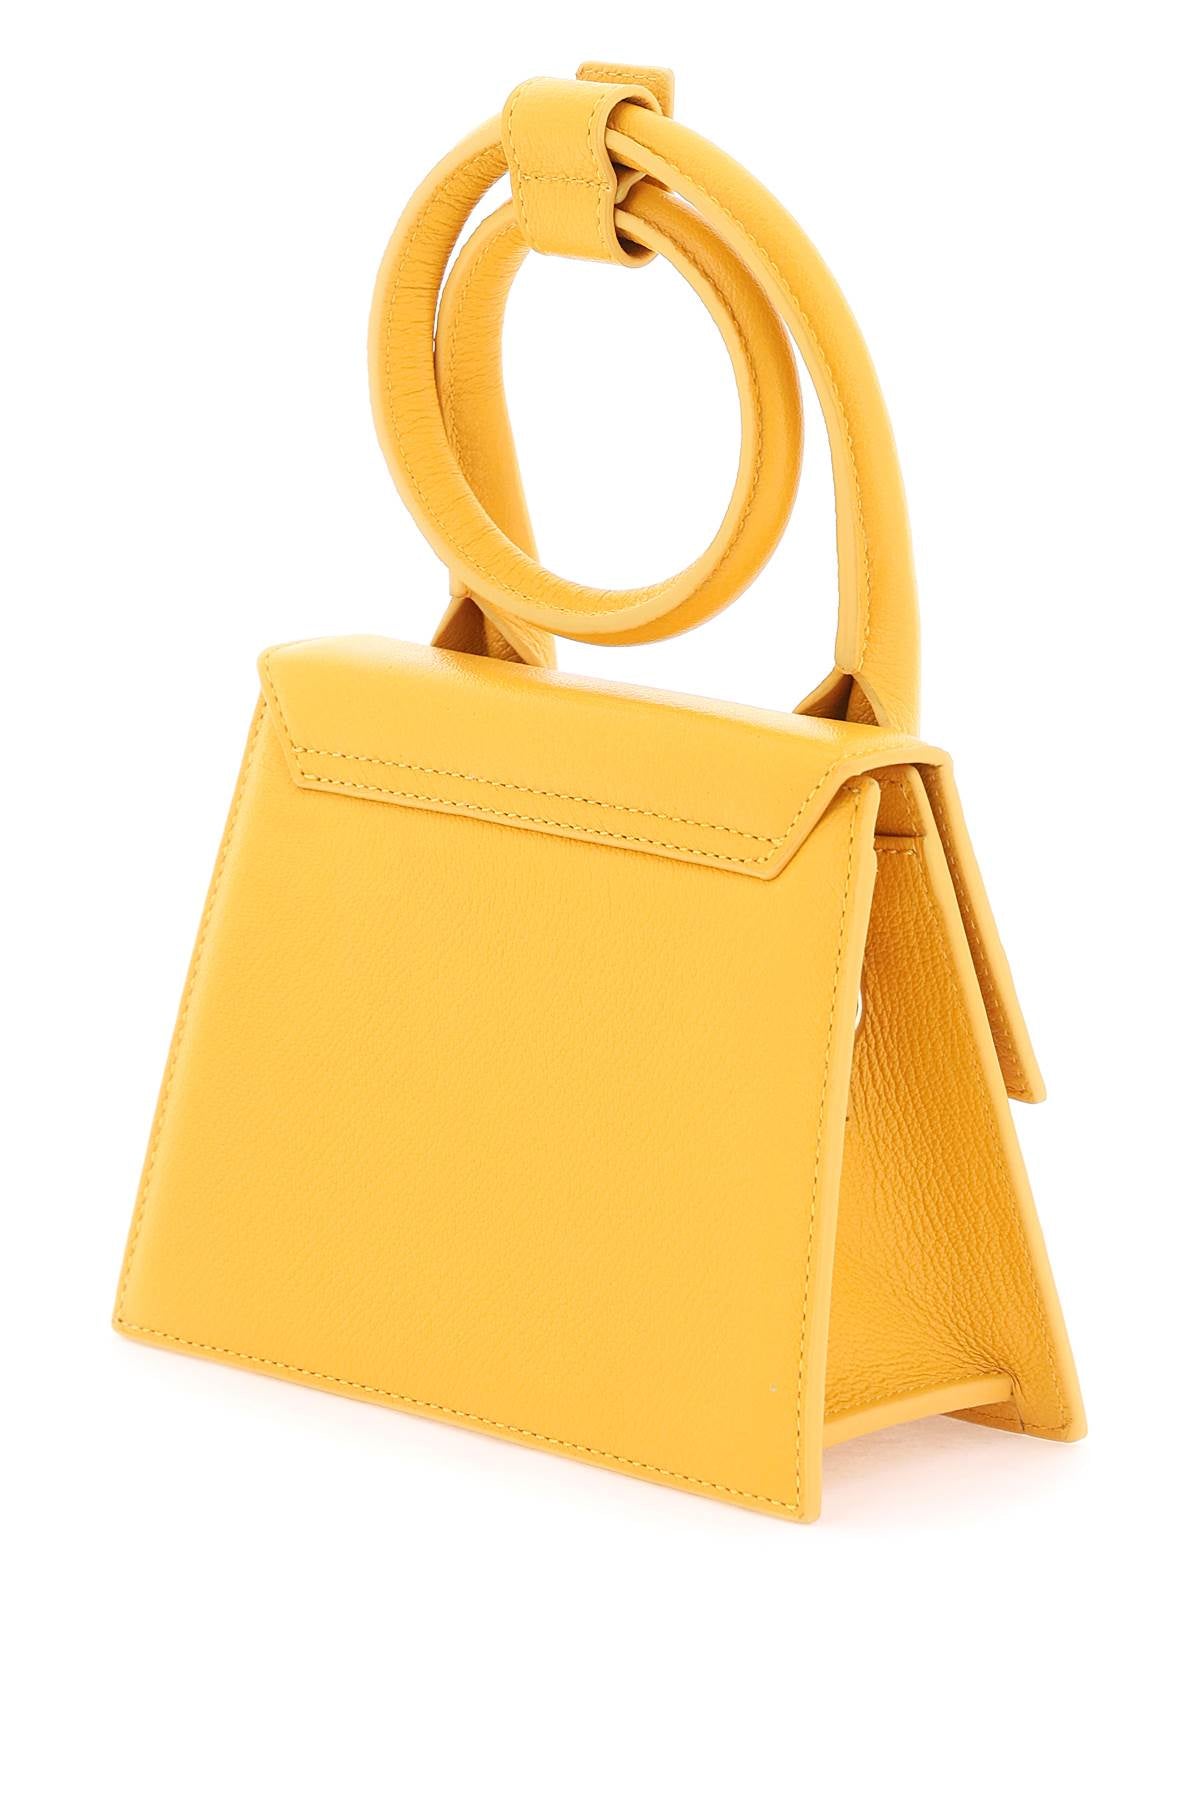 Shop Jacquemus Le Chiquito Noeud Mini Handbag In Orange